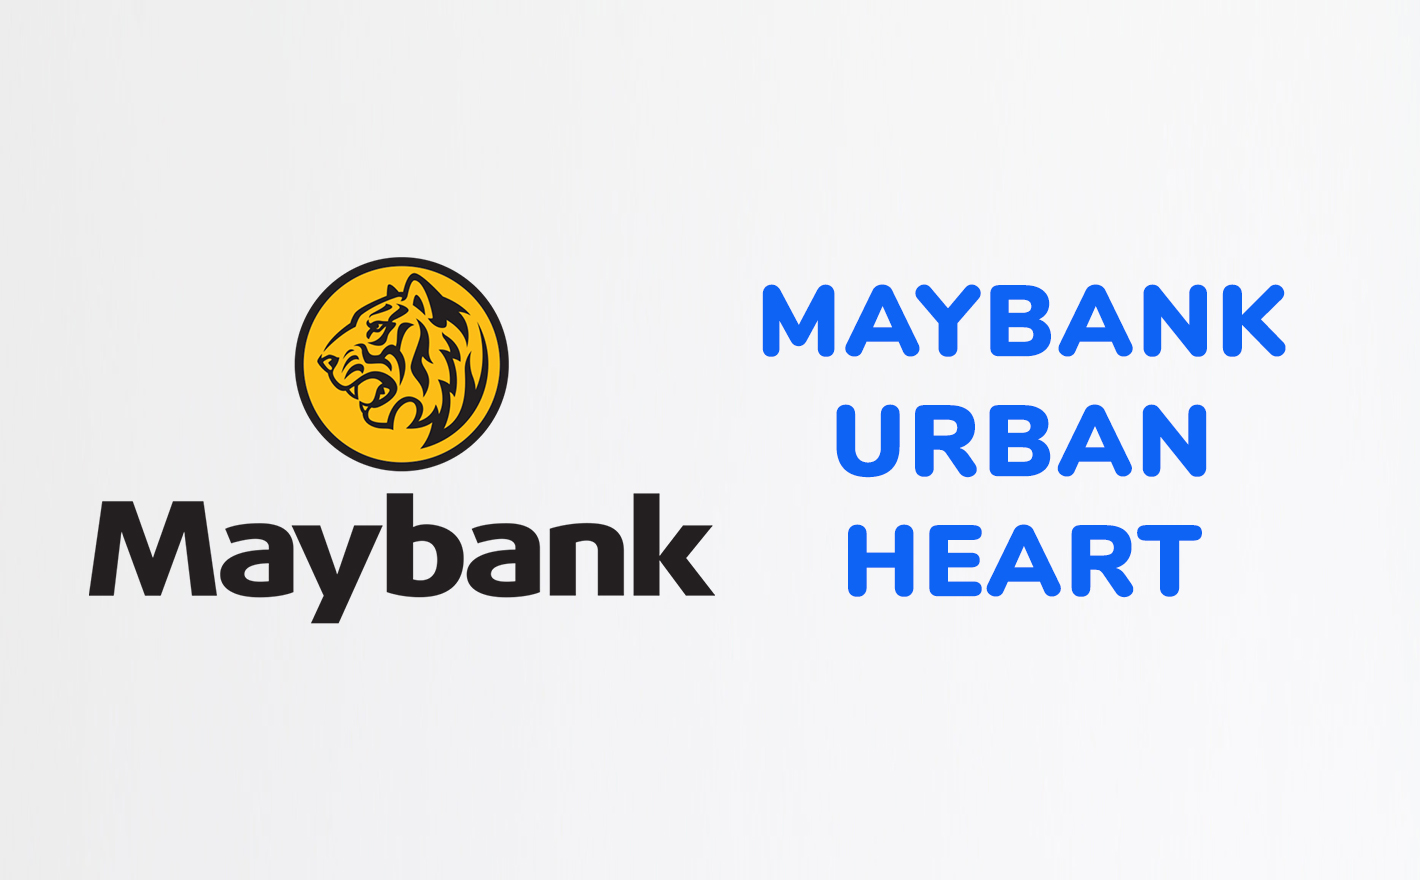 Maybank Malayan Banking